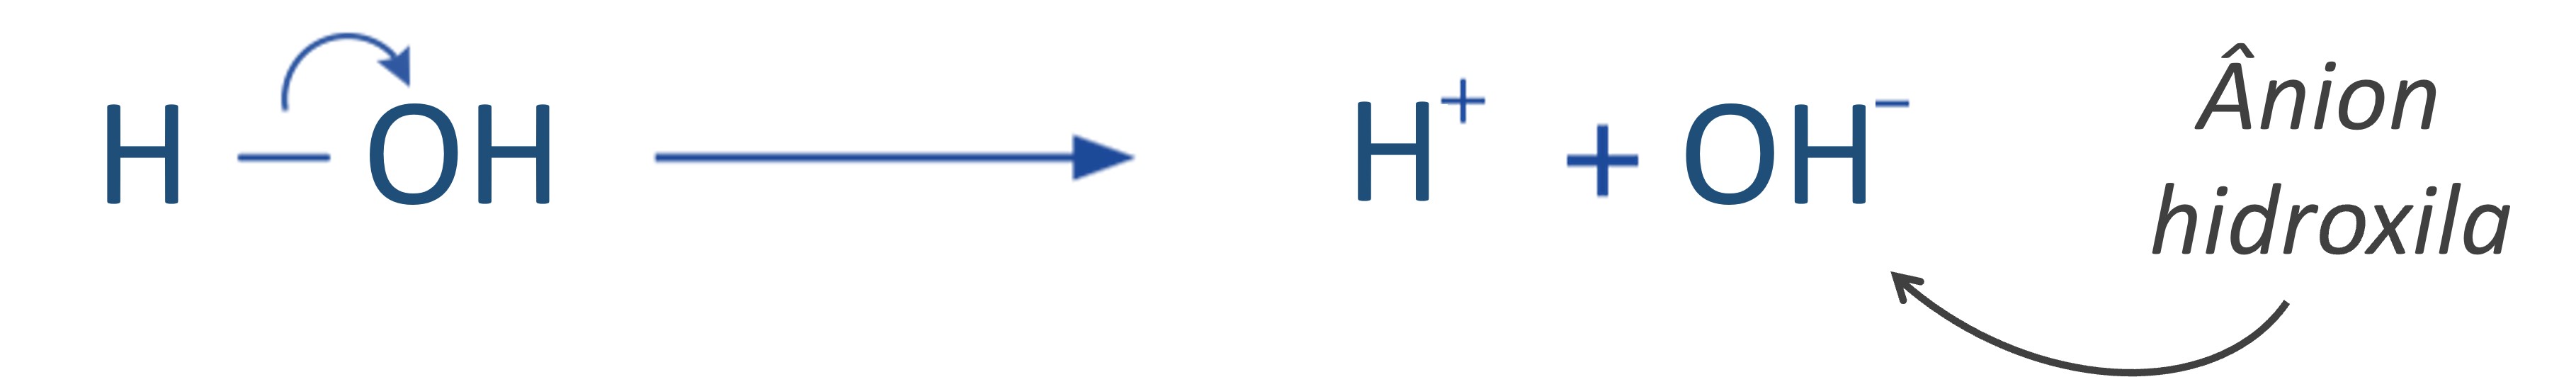 Formação do ânion hidroxila na ruptura heterolítica da molécula de água.